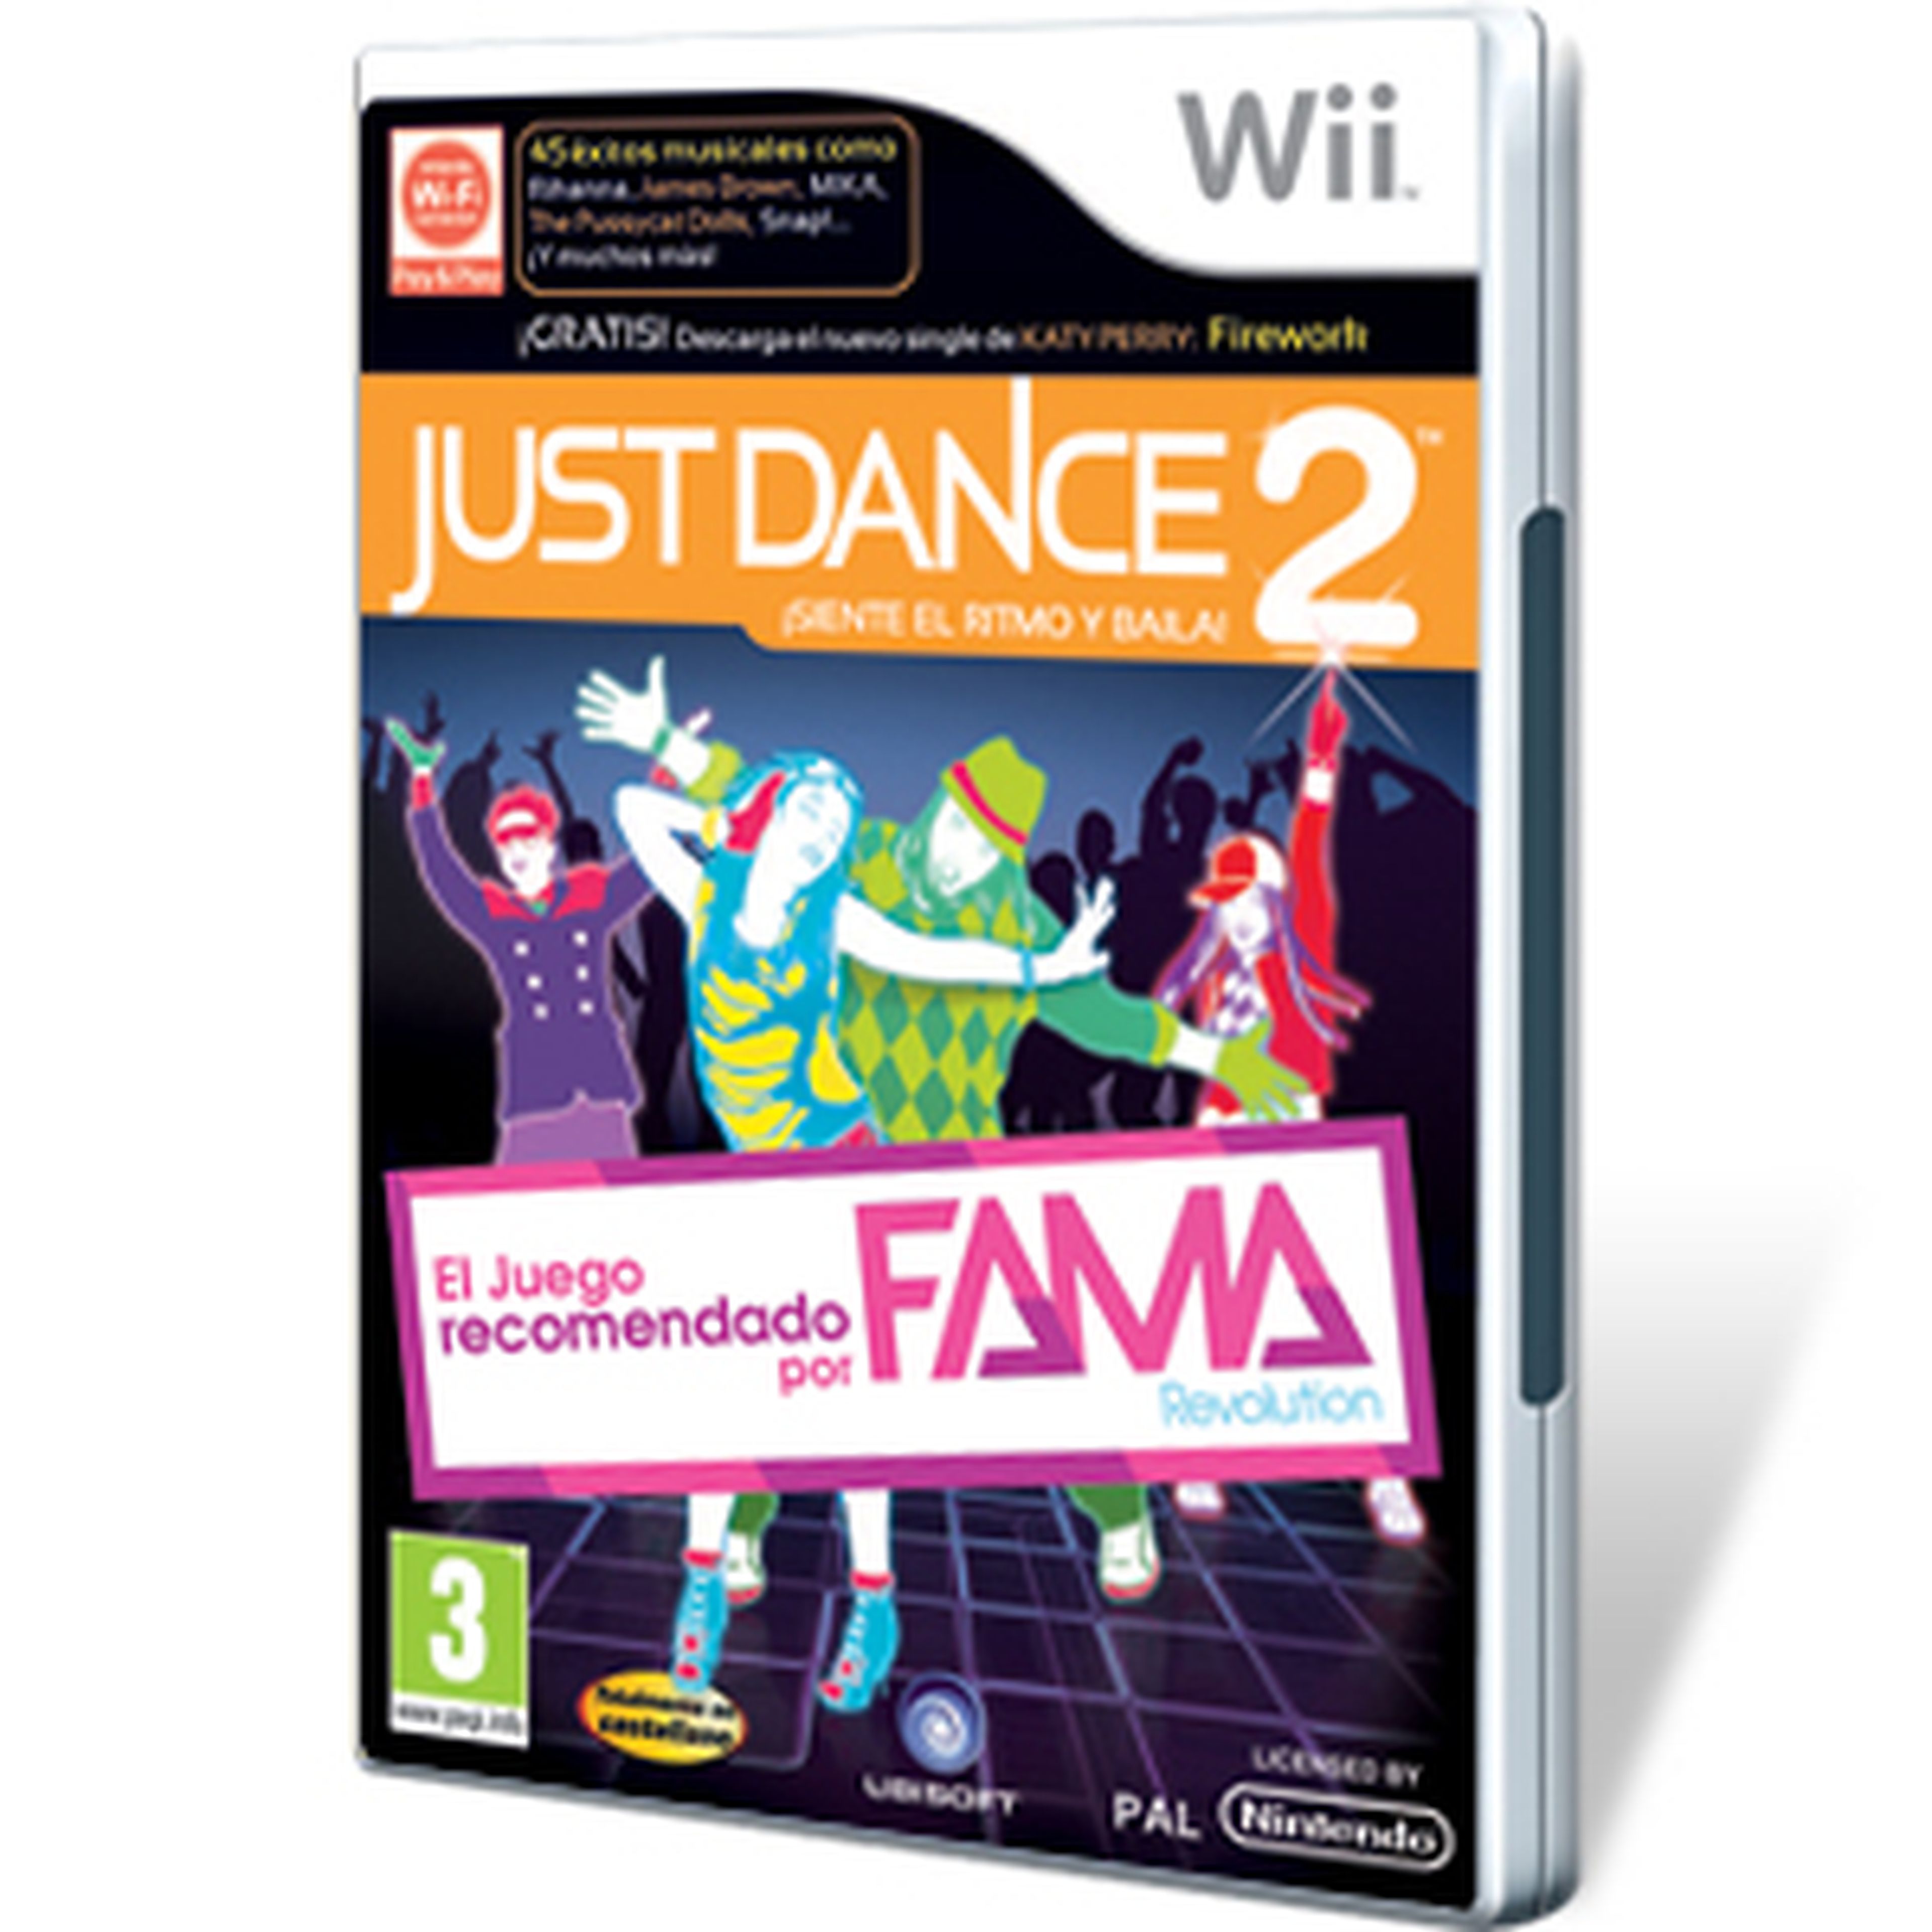 Just Dance 2 para Wii